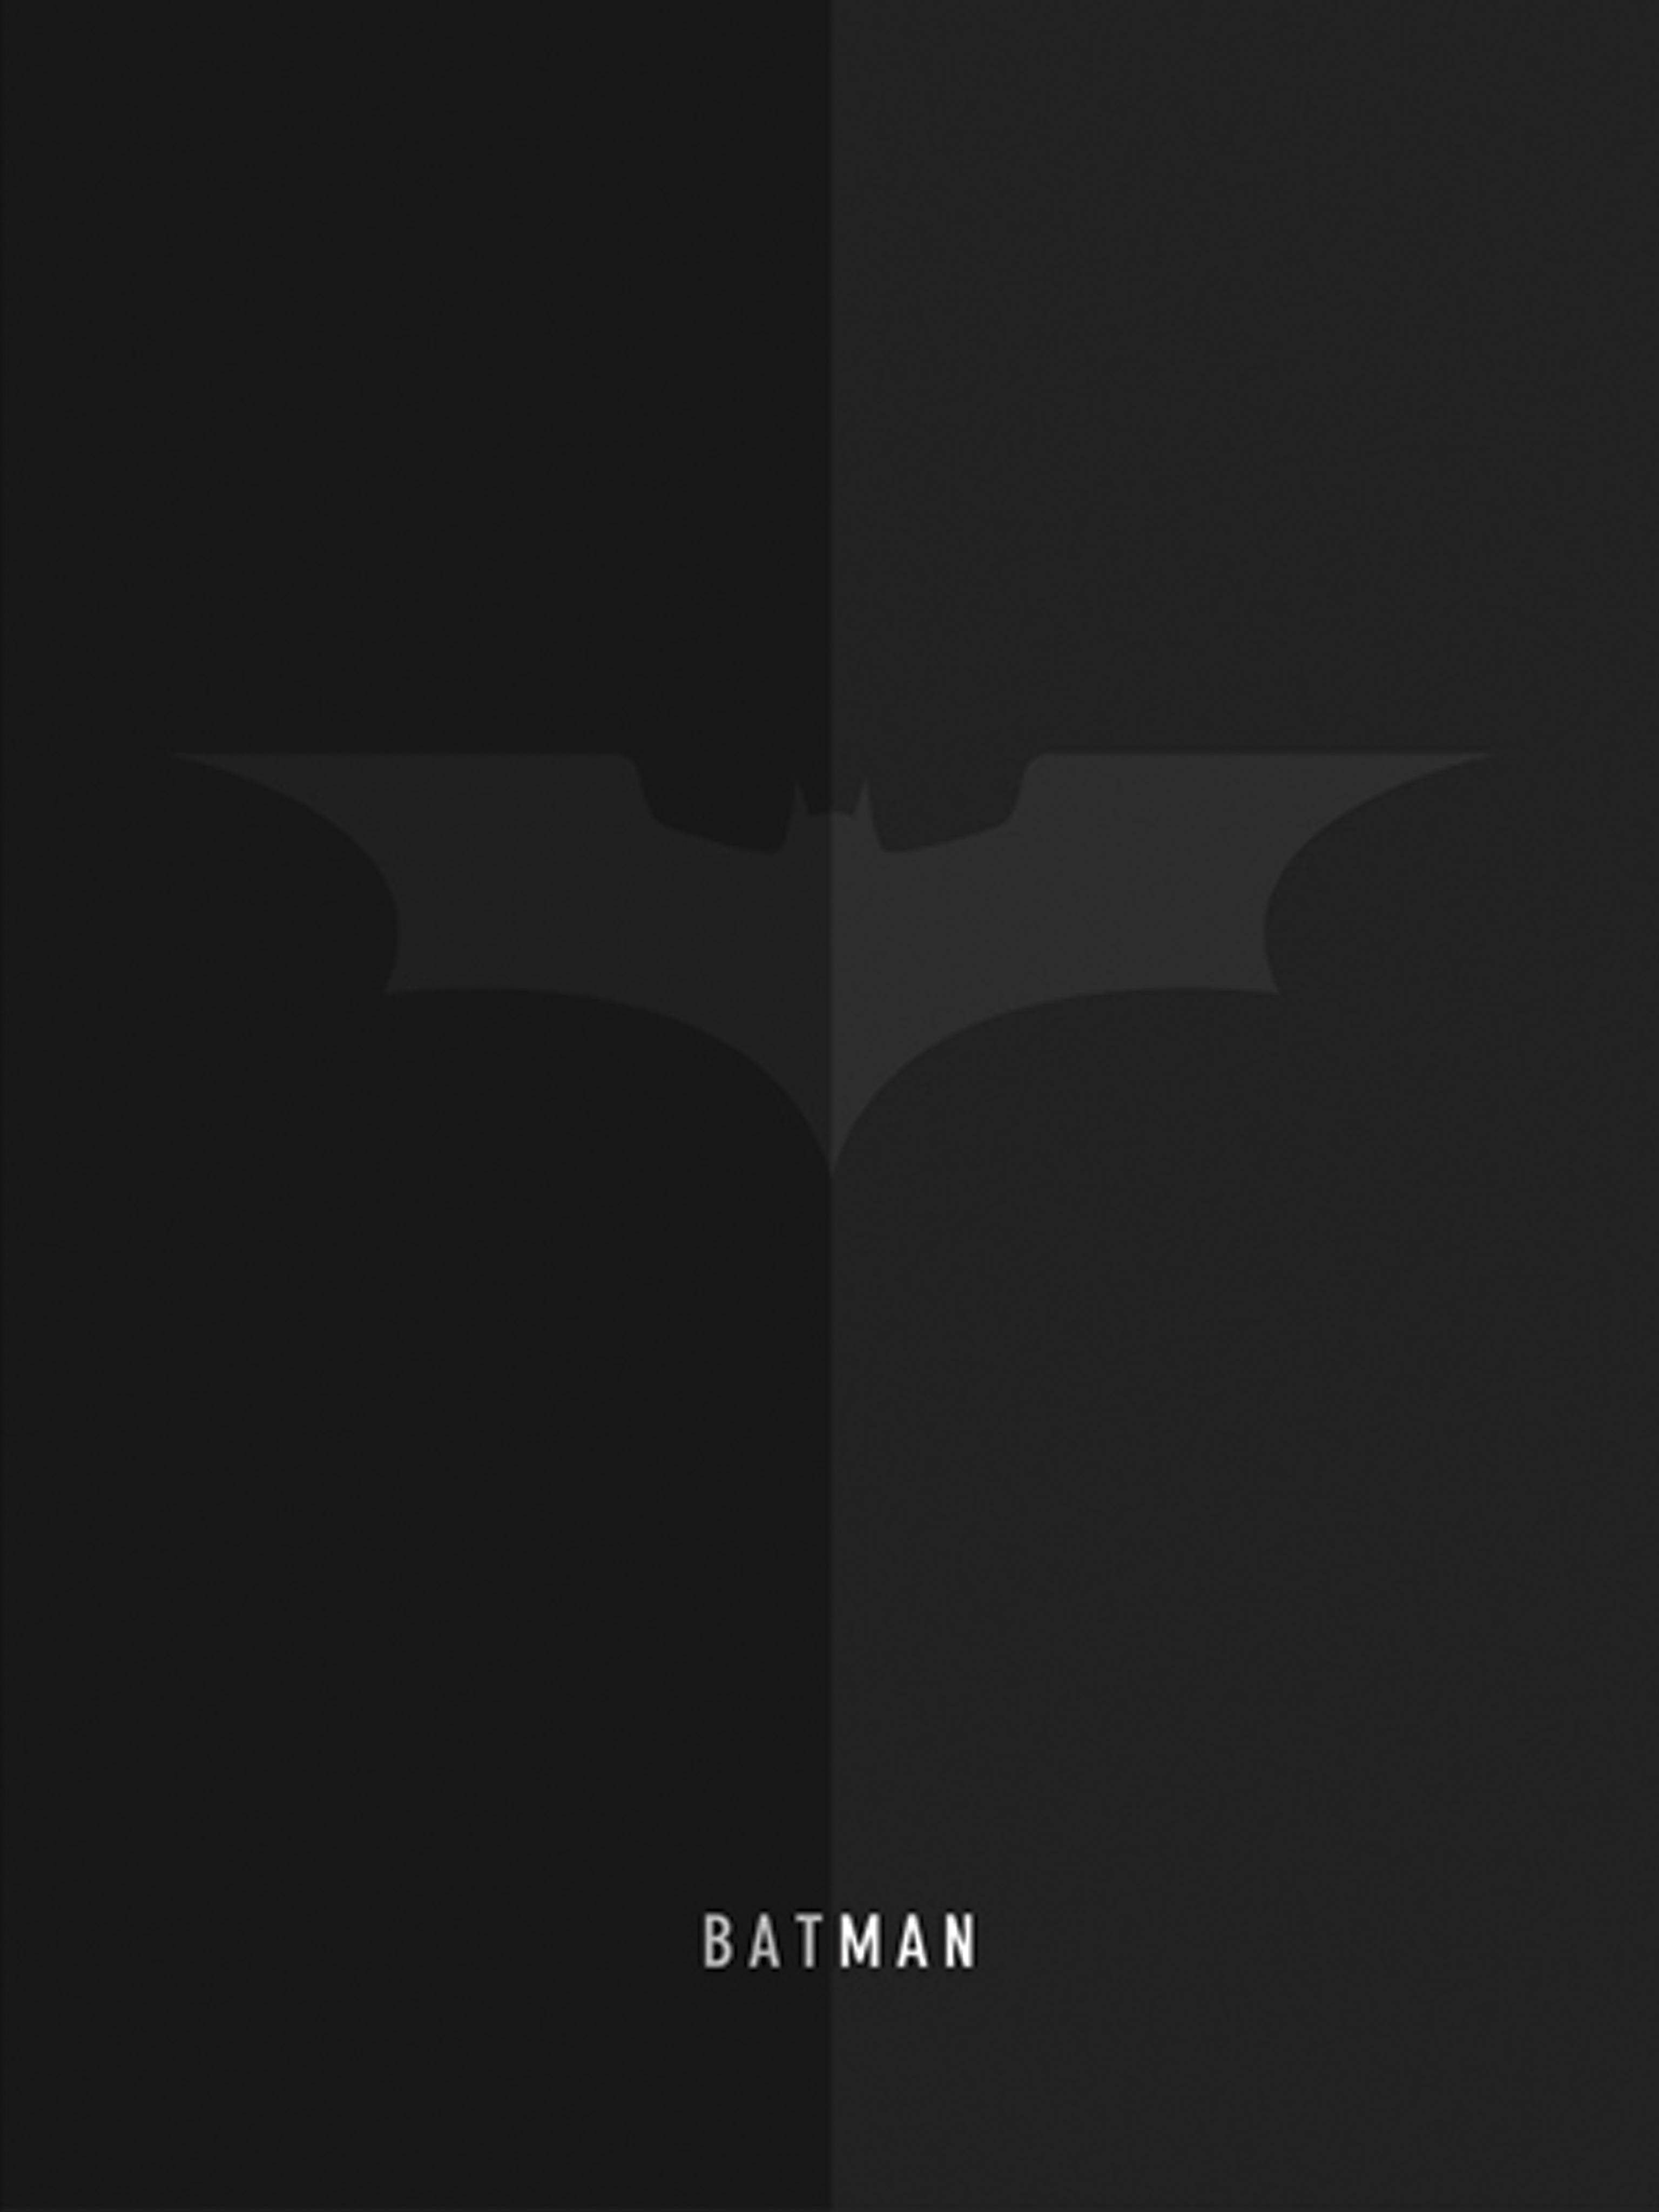 Batman Hd Wallpaper Download For Mobile Phone